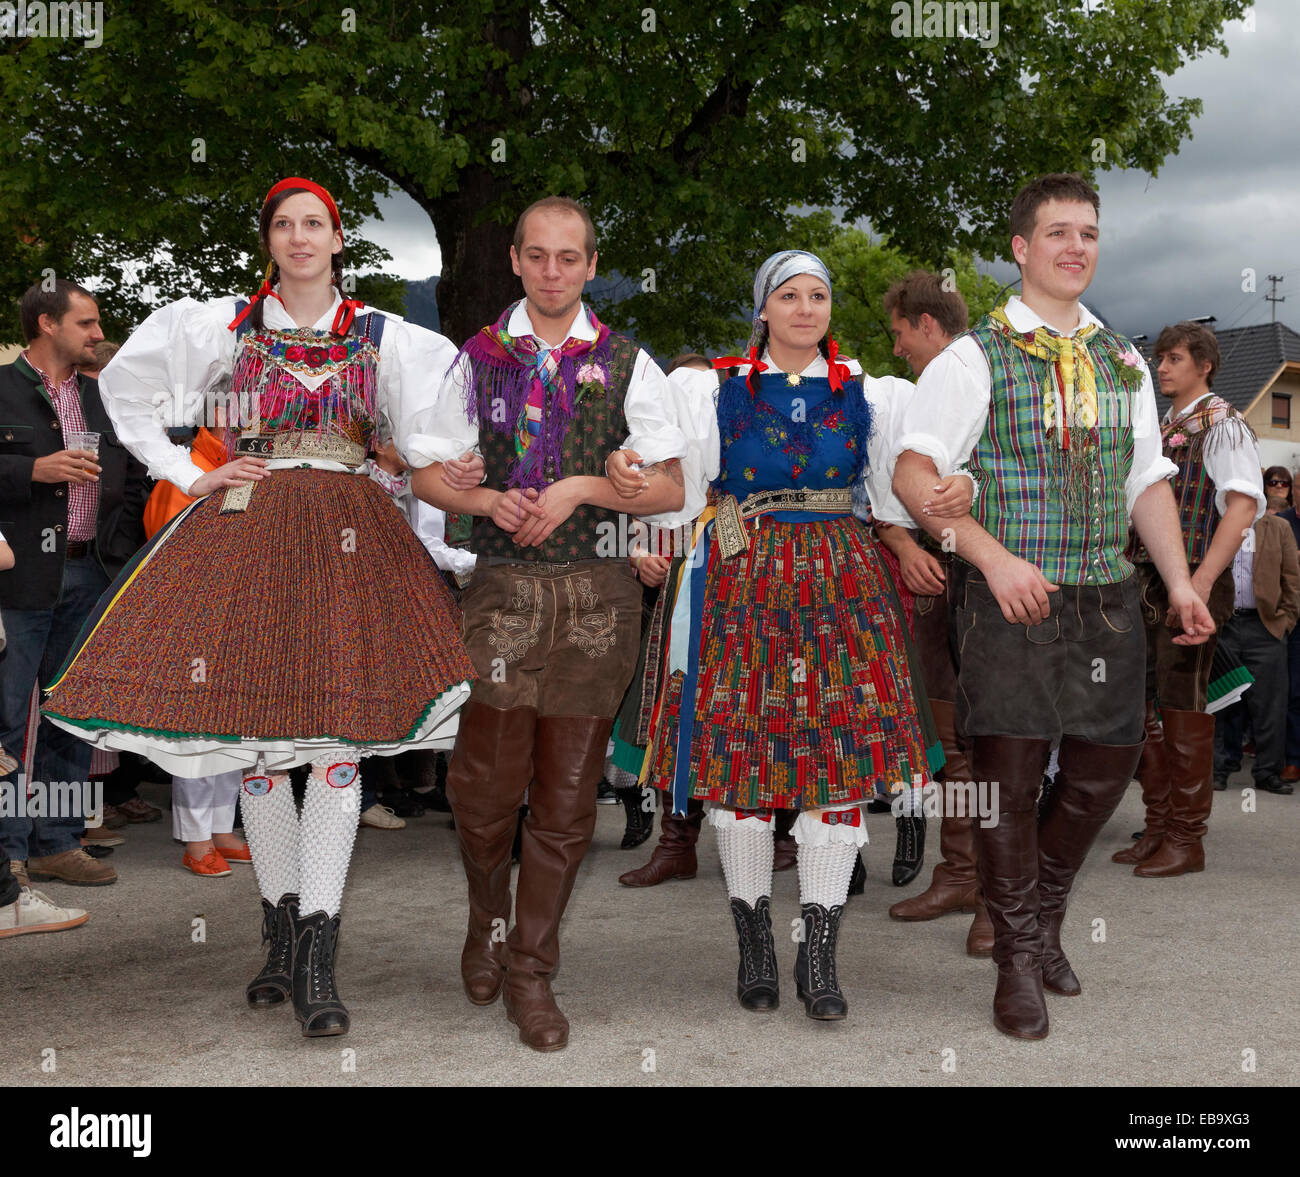 Männer und Frauen in traditionellen Kostümen vom Gailtaler Tal Tanz, Tanz Unter der Linde Tanz, Kufenstechen festival Stockfoto